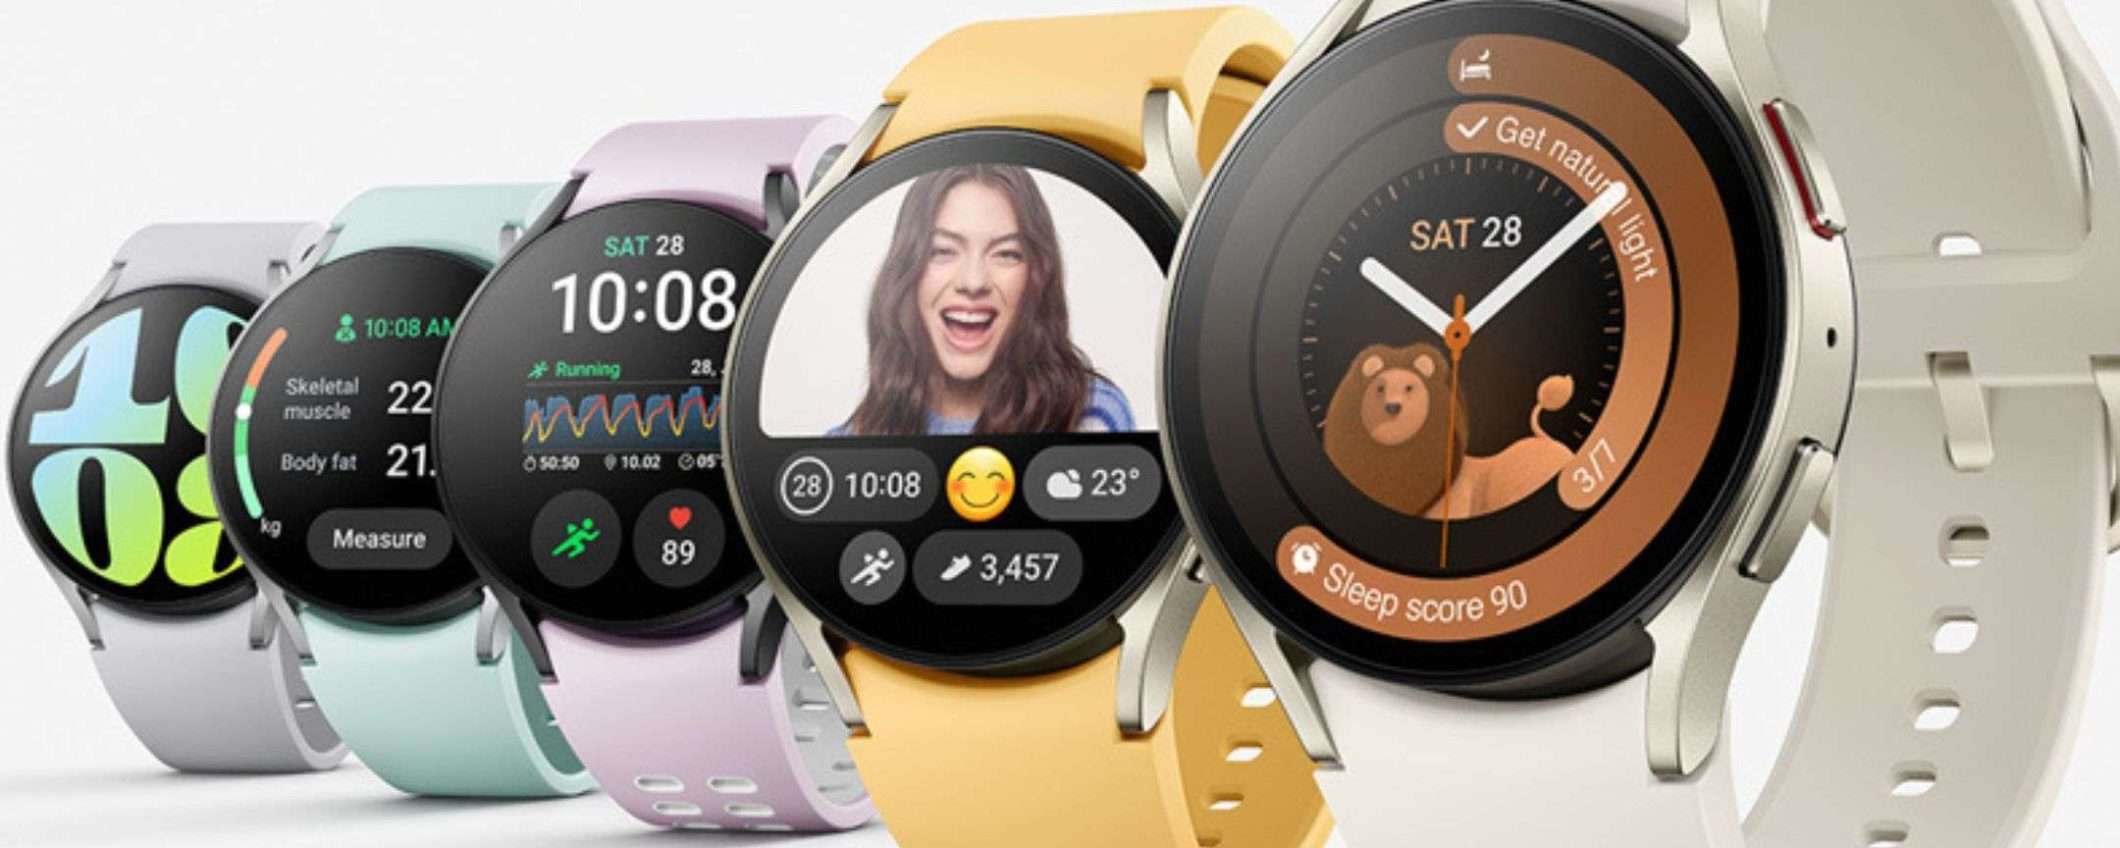 Samsung Galaxy Watch 6 LTE a metà prezzo su Amazon: è IMPERDIBILE (anche in 5 rate)